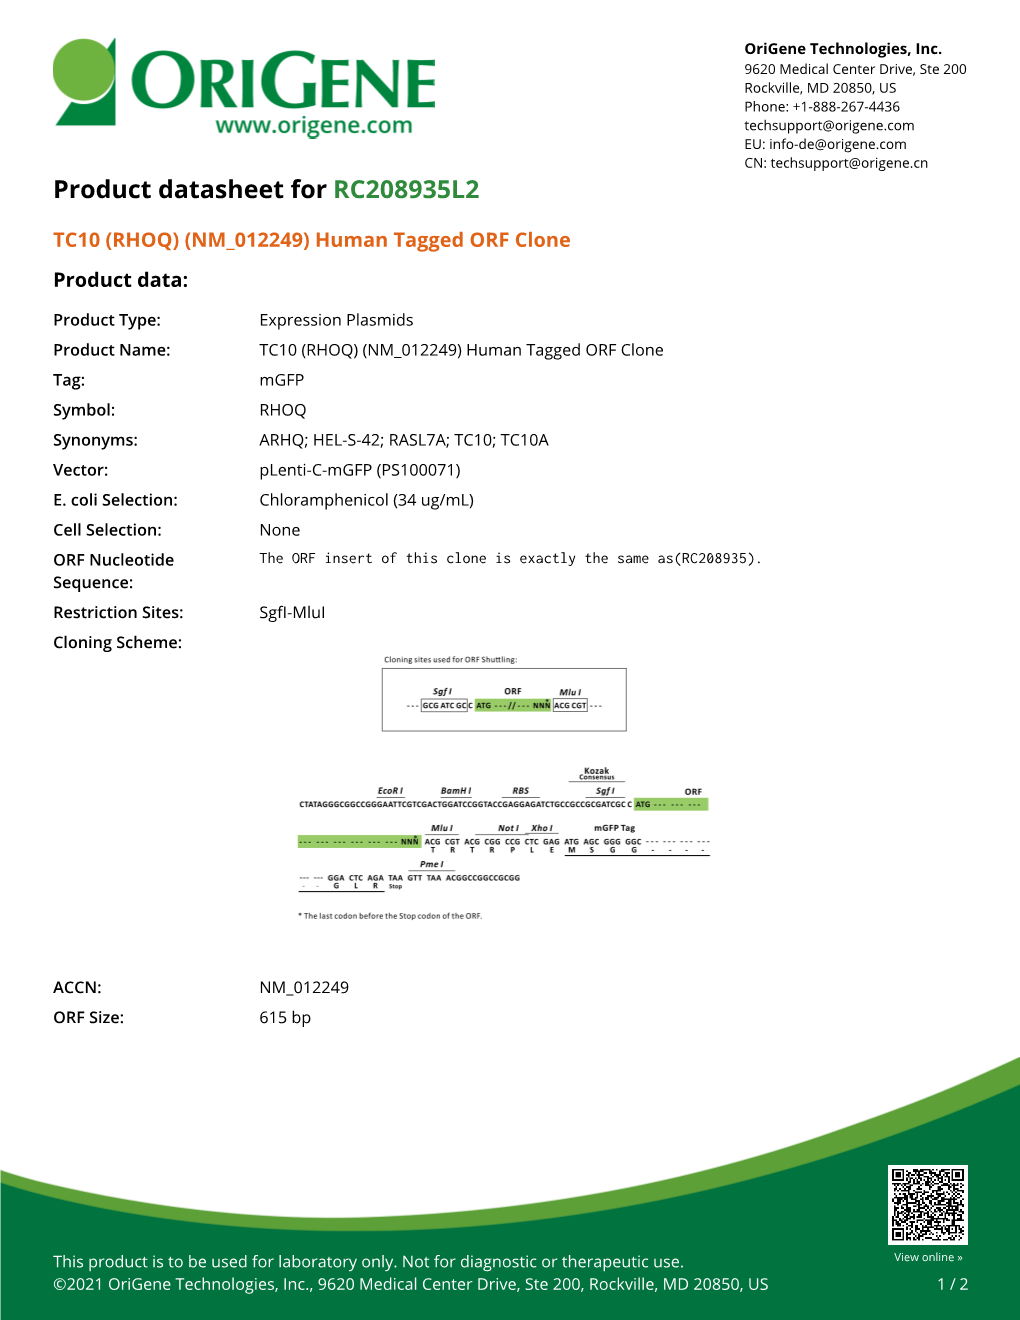 TC10 (RHOQ) (NM 012249) Human Tagged ORF Clone Product Data